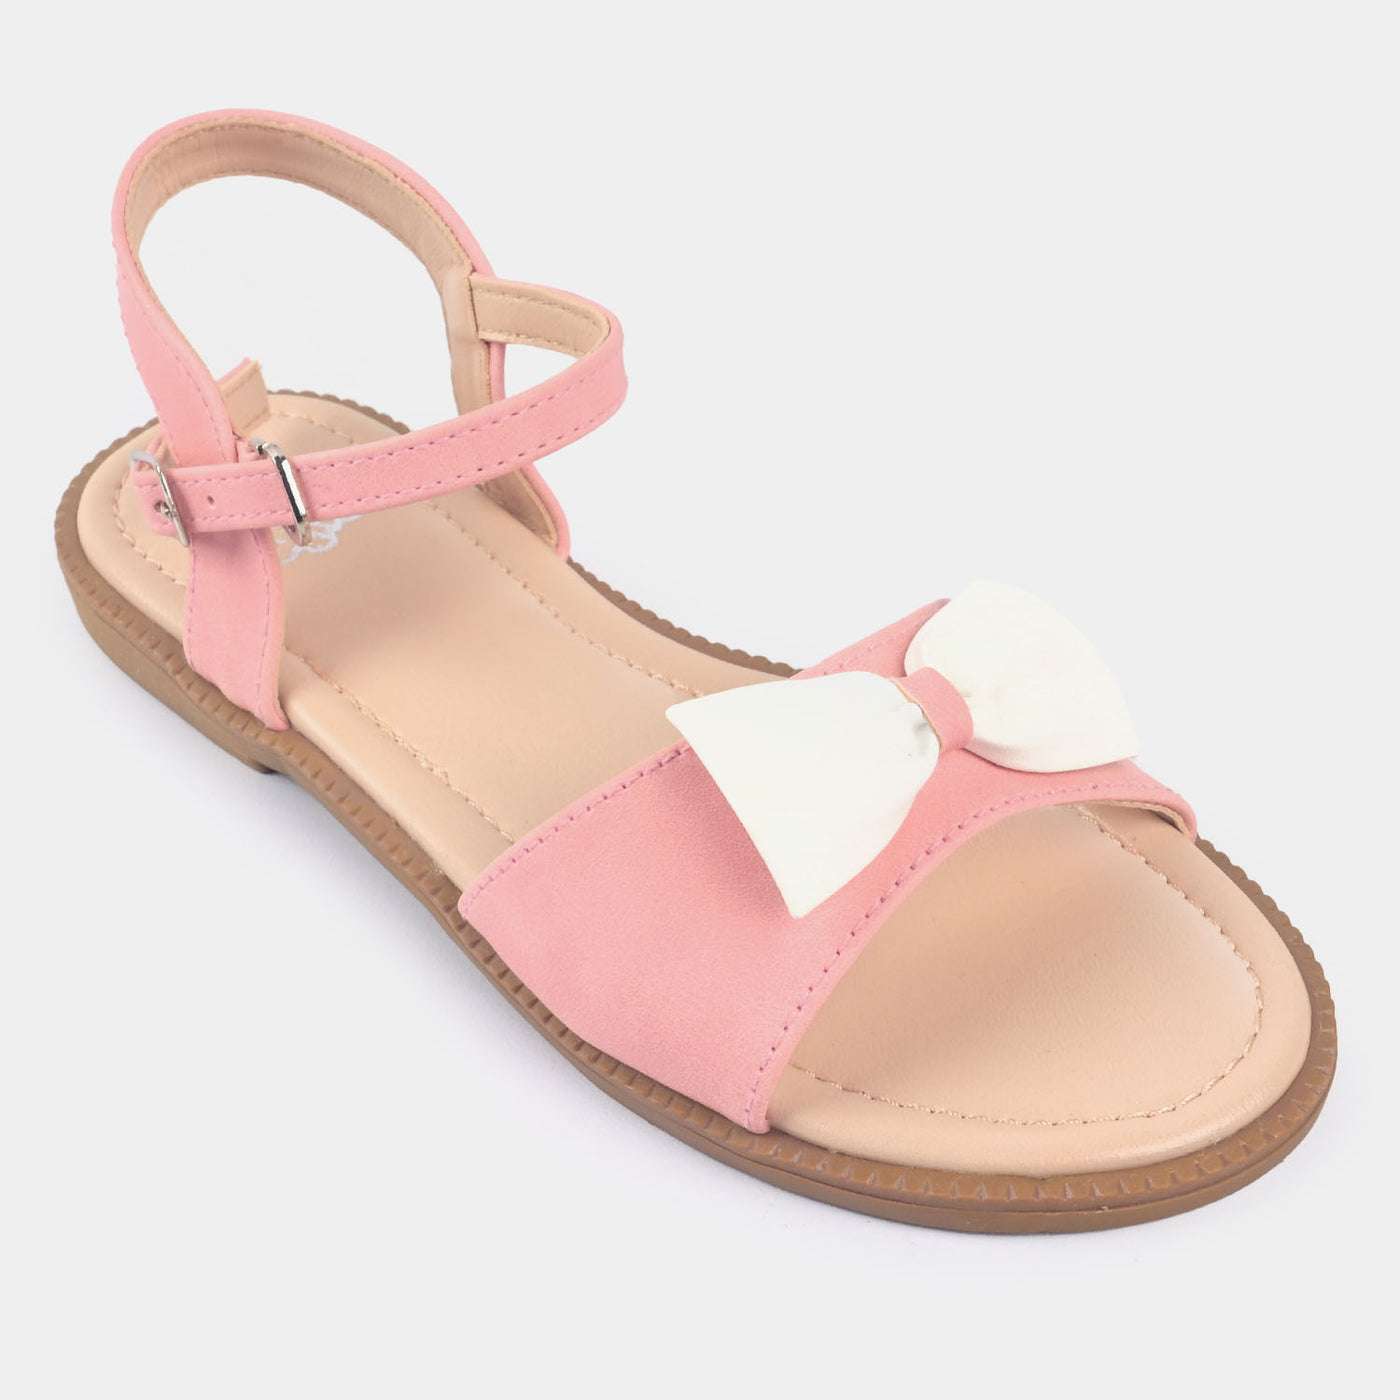 Girls Sandal 456-53-Pink